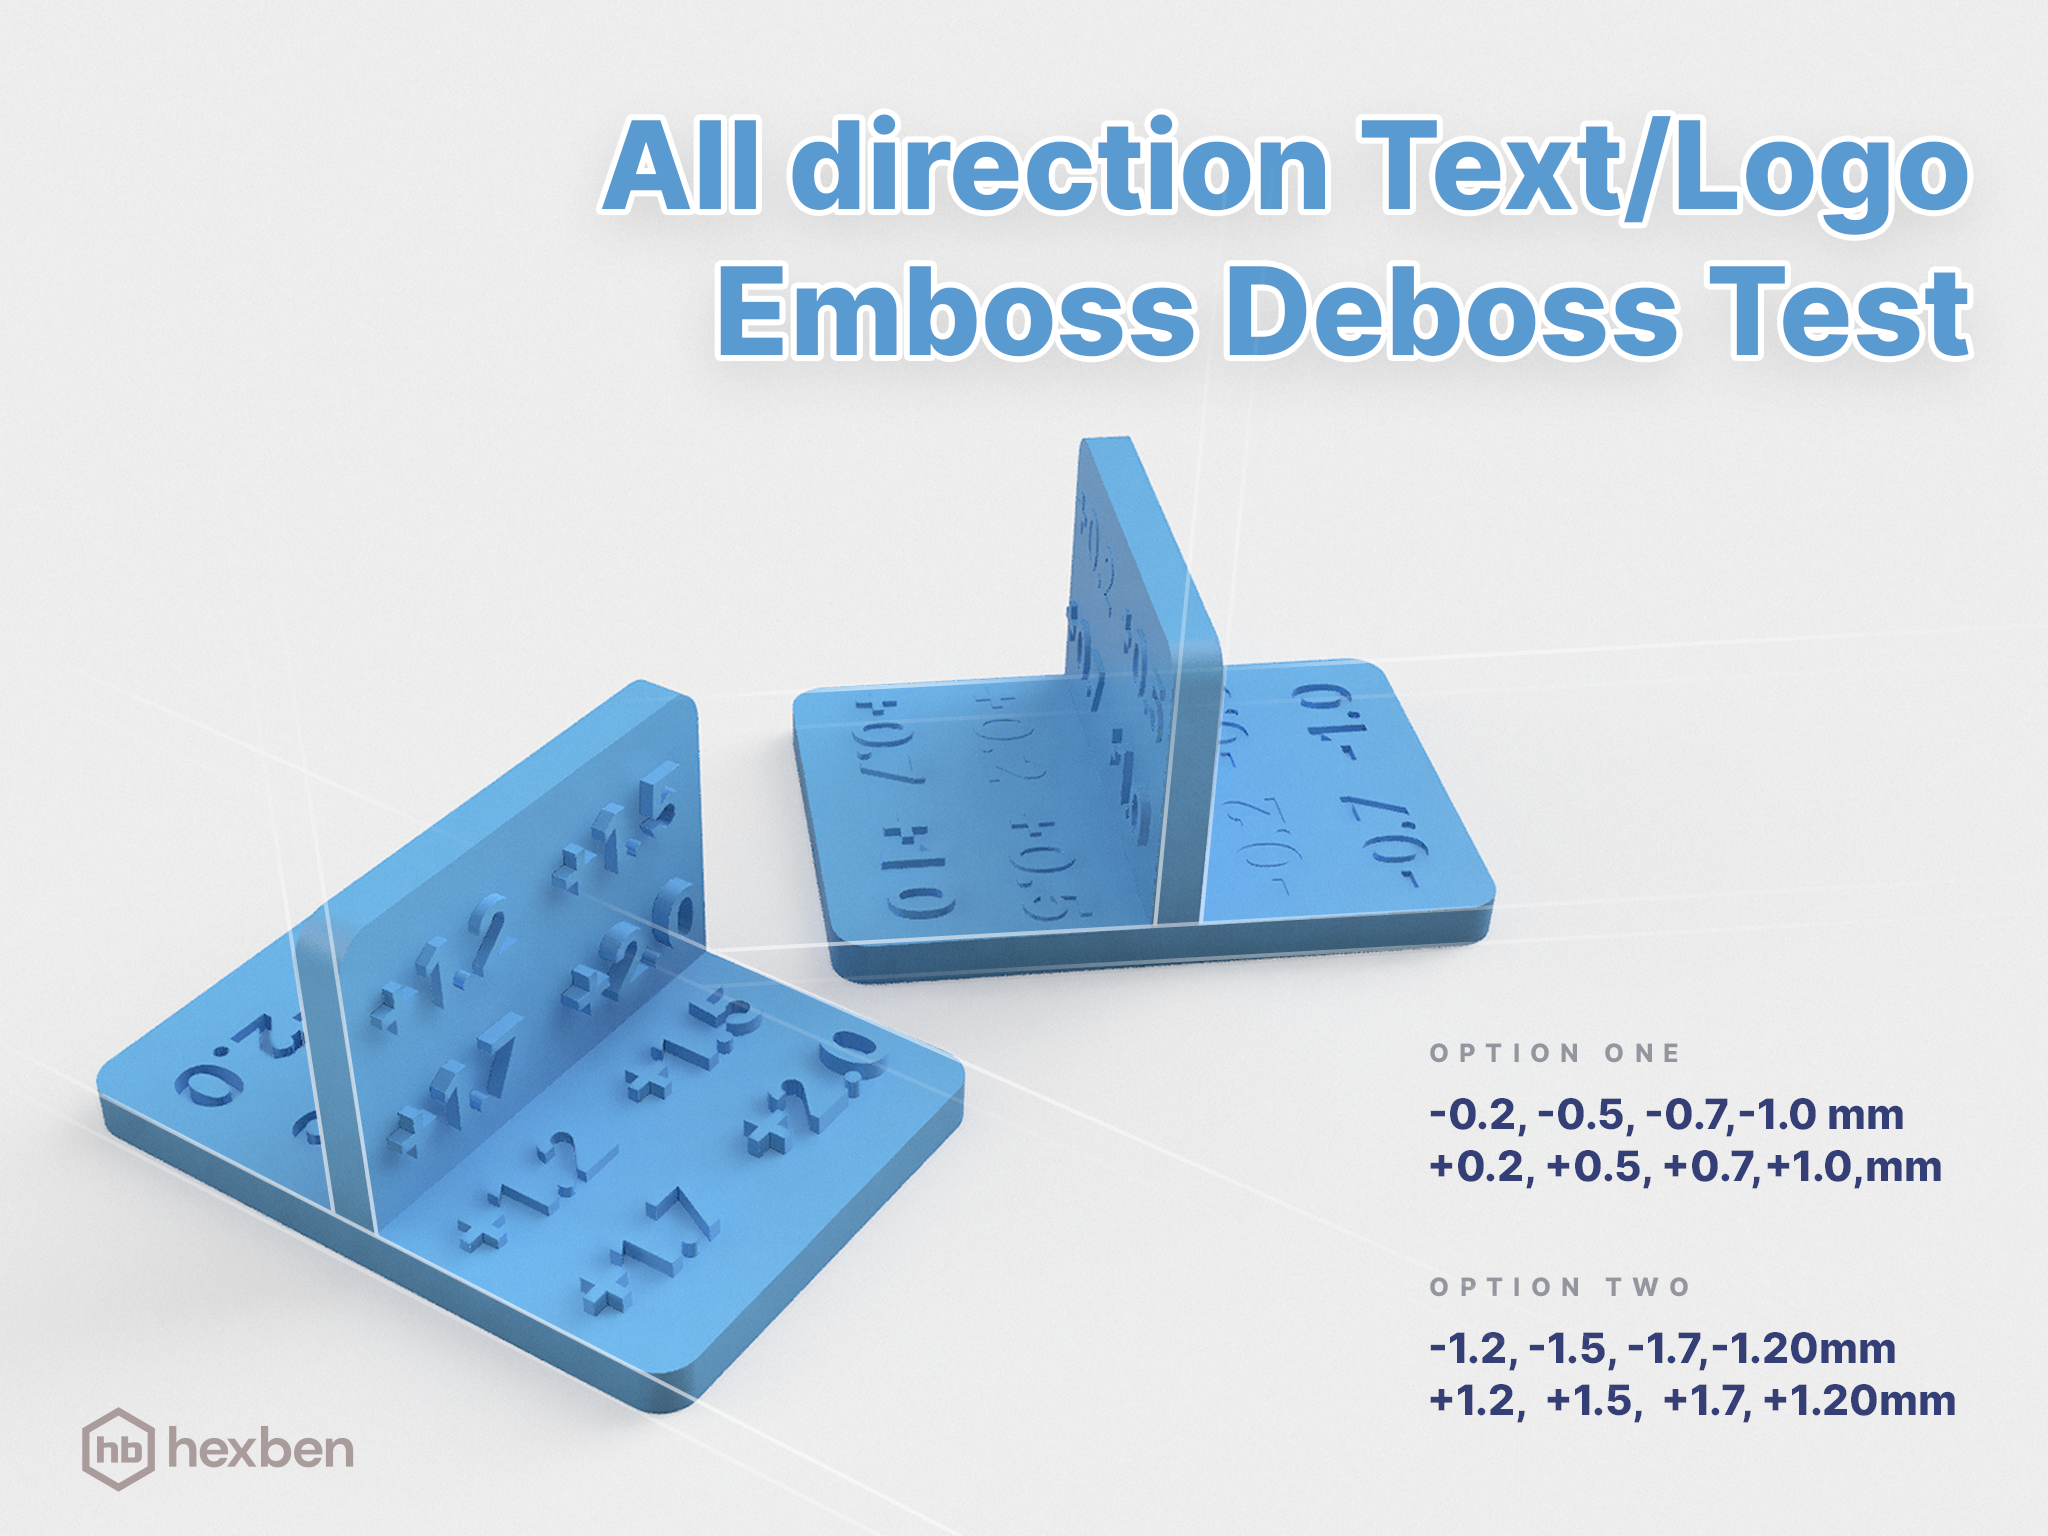 All direction Text/Logo Emboss Deboss Test